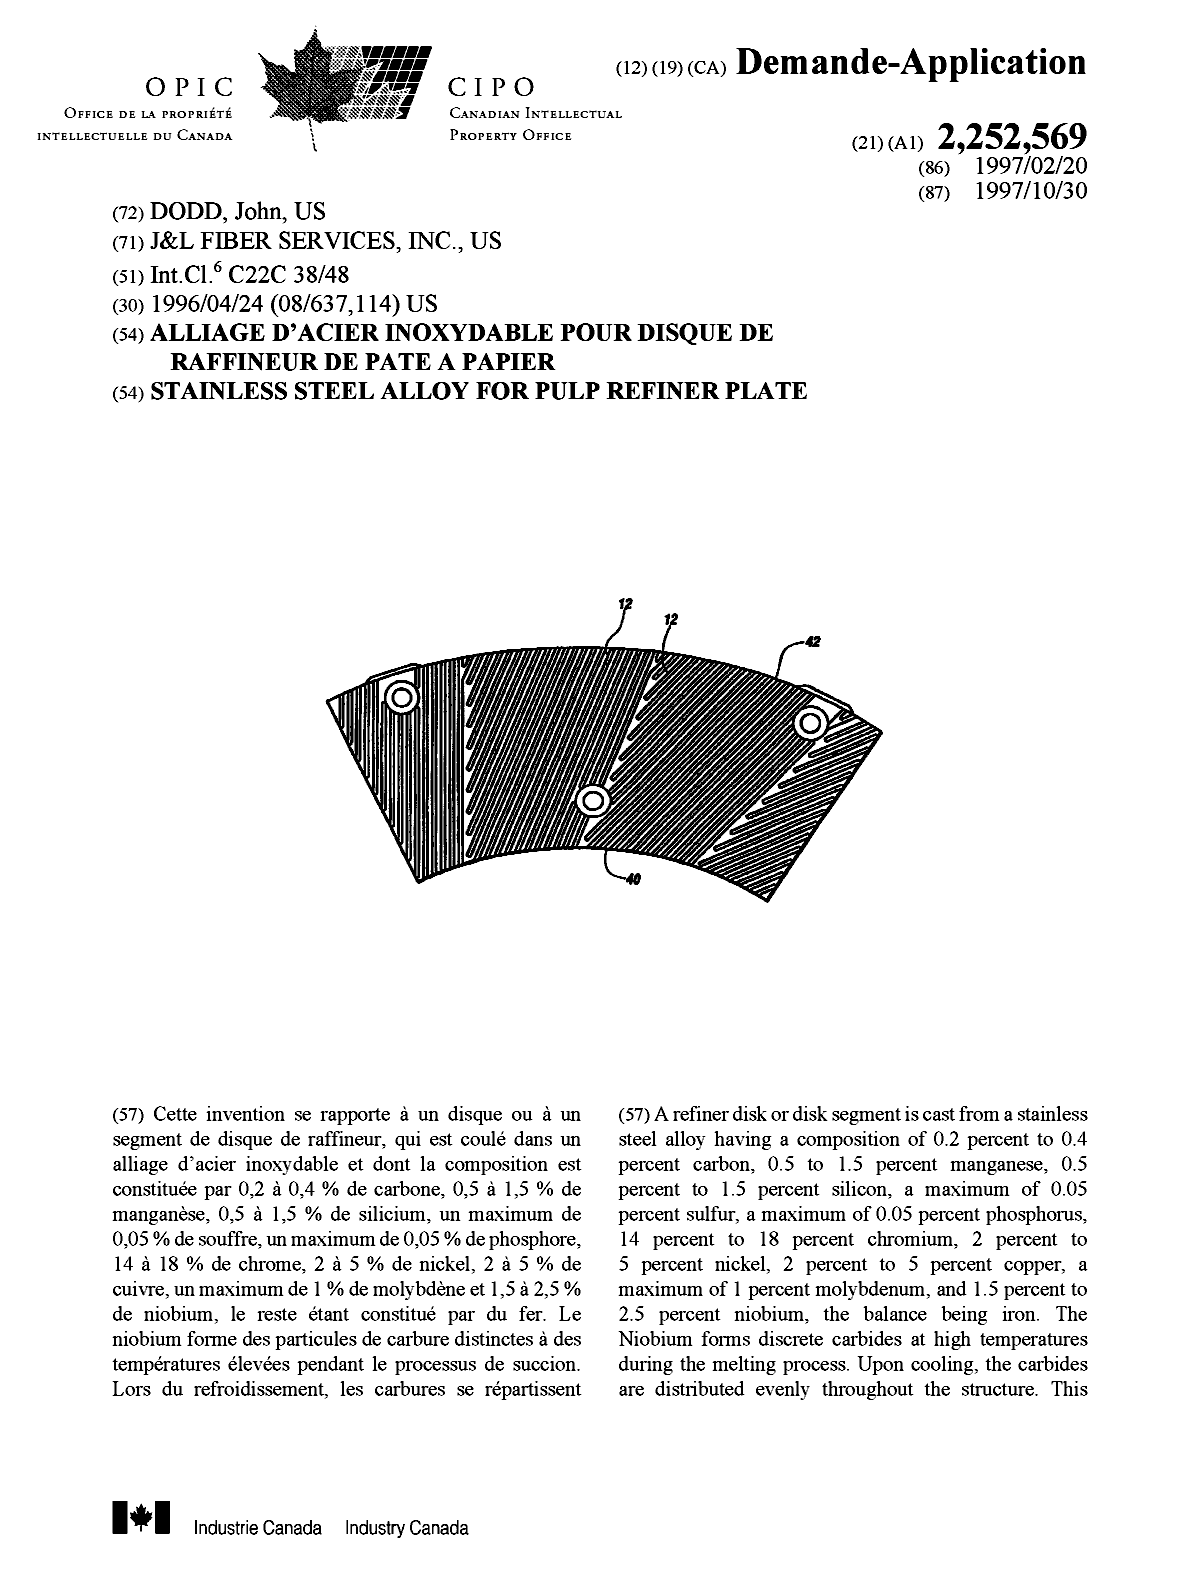 Document de brevet canadien 2252569. Page couverture 19990113. Image 1 de 2